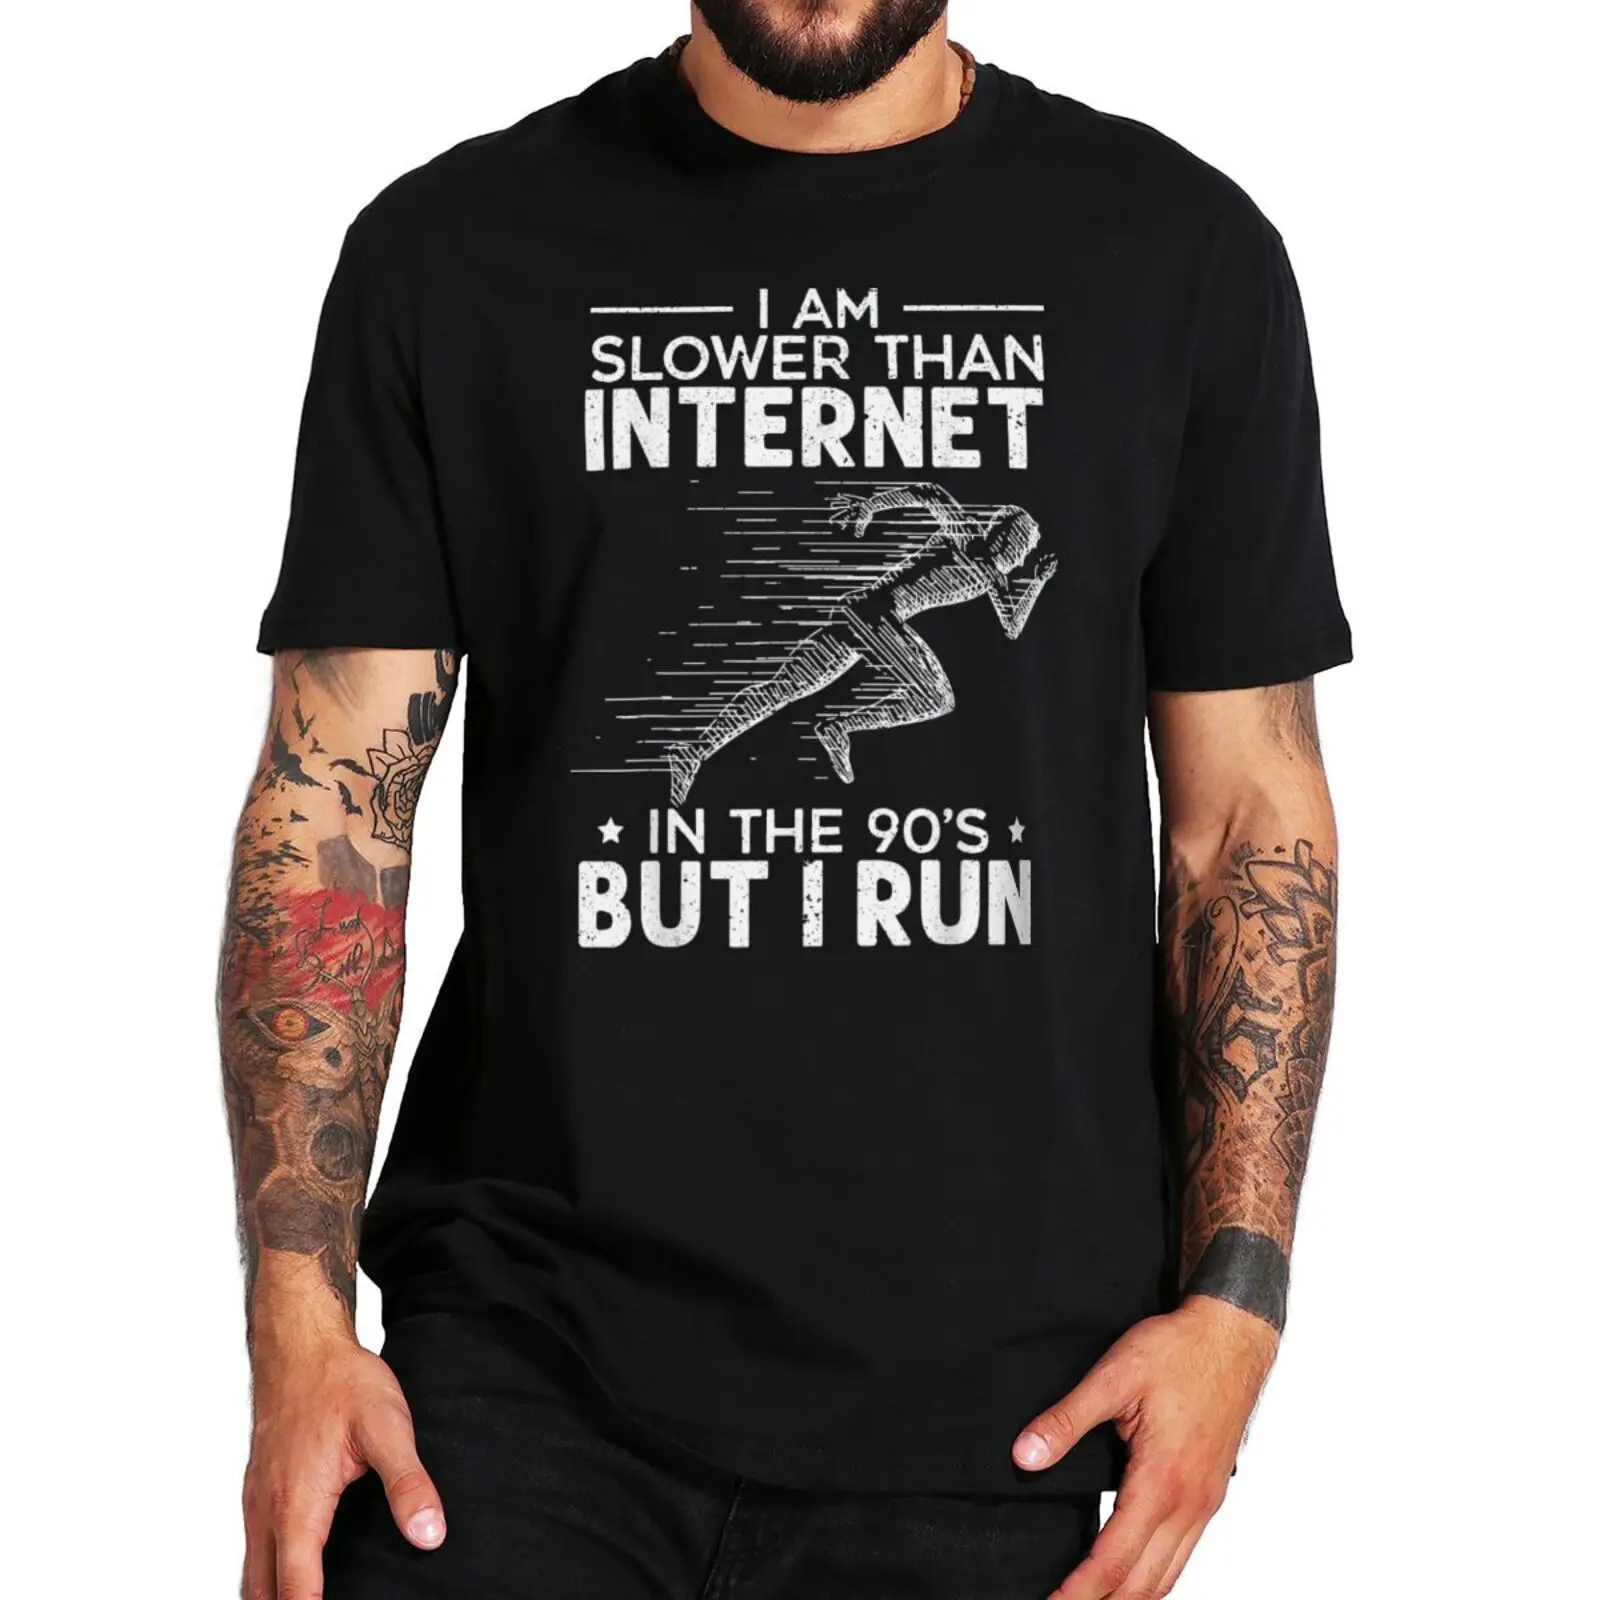 

Running Internet T-shirt Humor Track Run Lovers 90s Runner Geek Gift Short Sleeve Summer Casual Cotton Oversized T Shirt EU Size